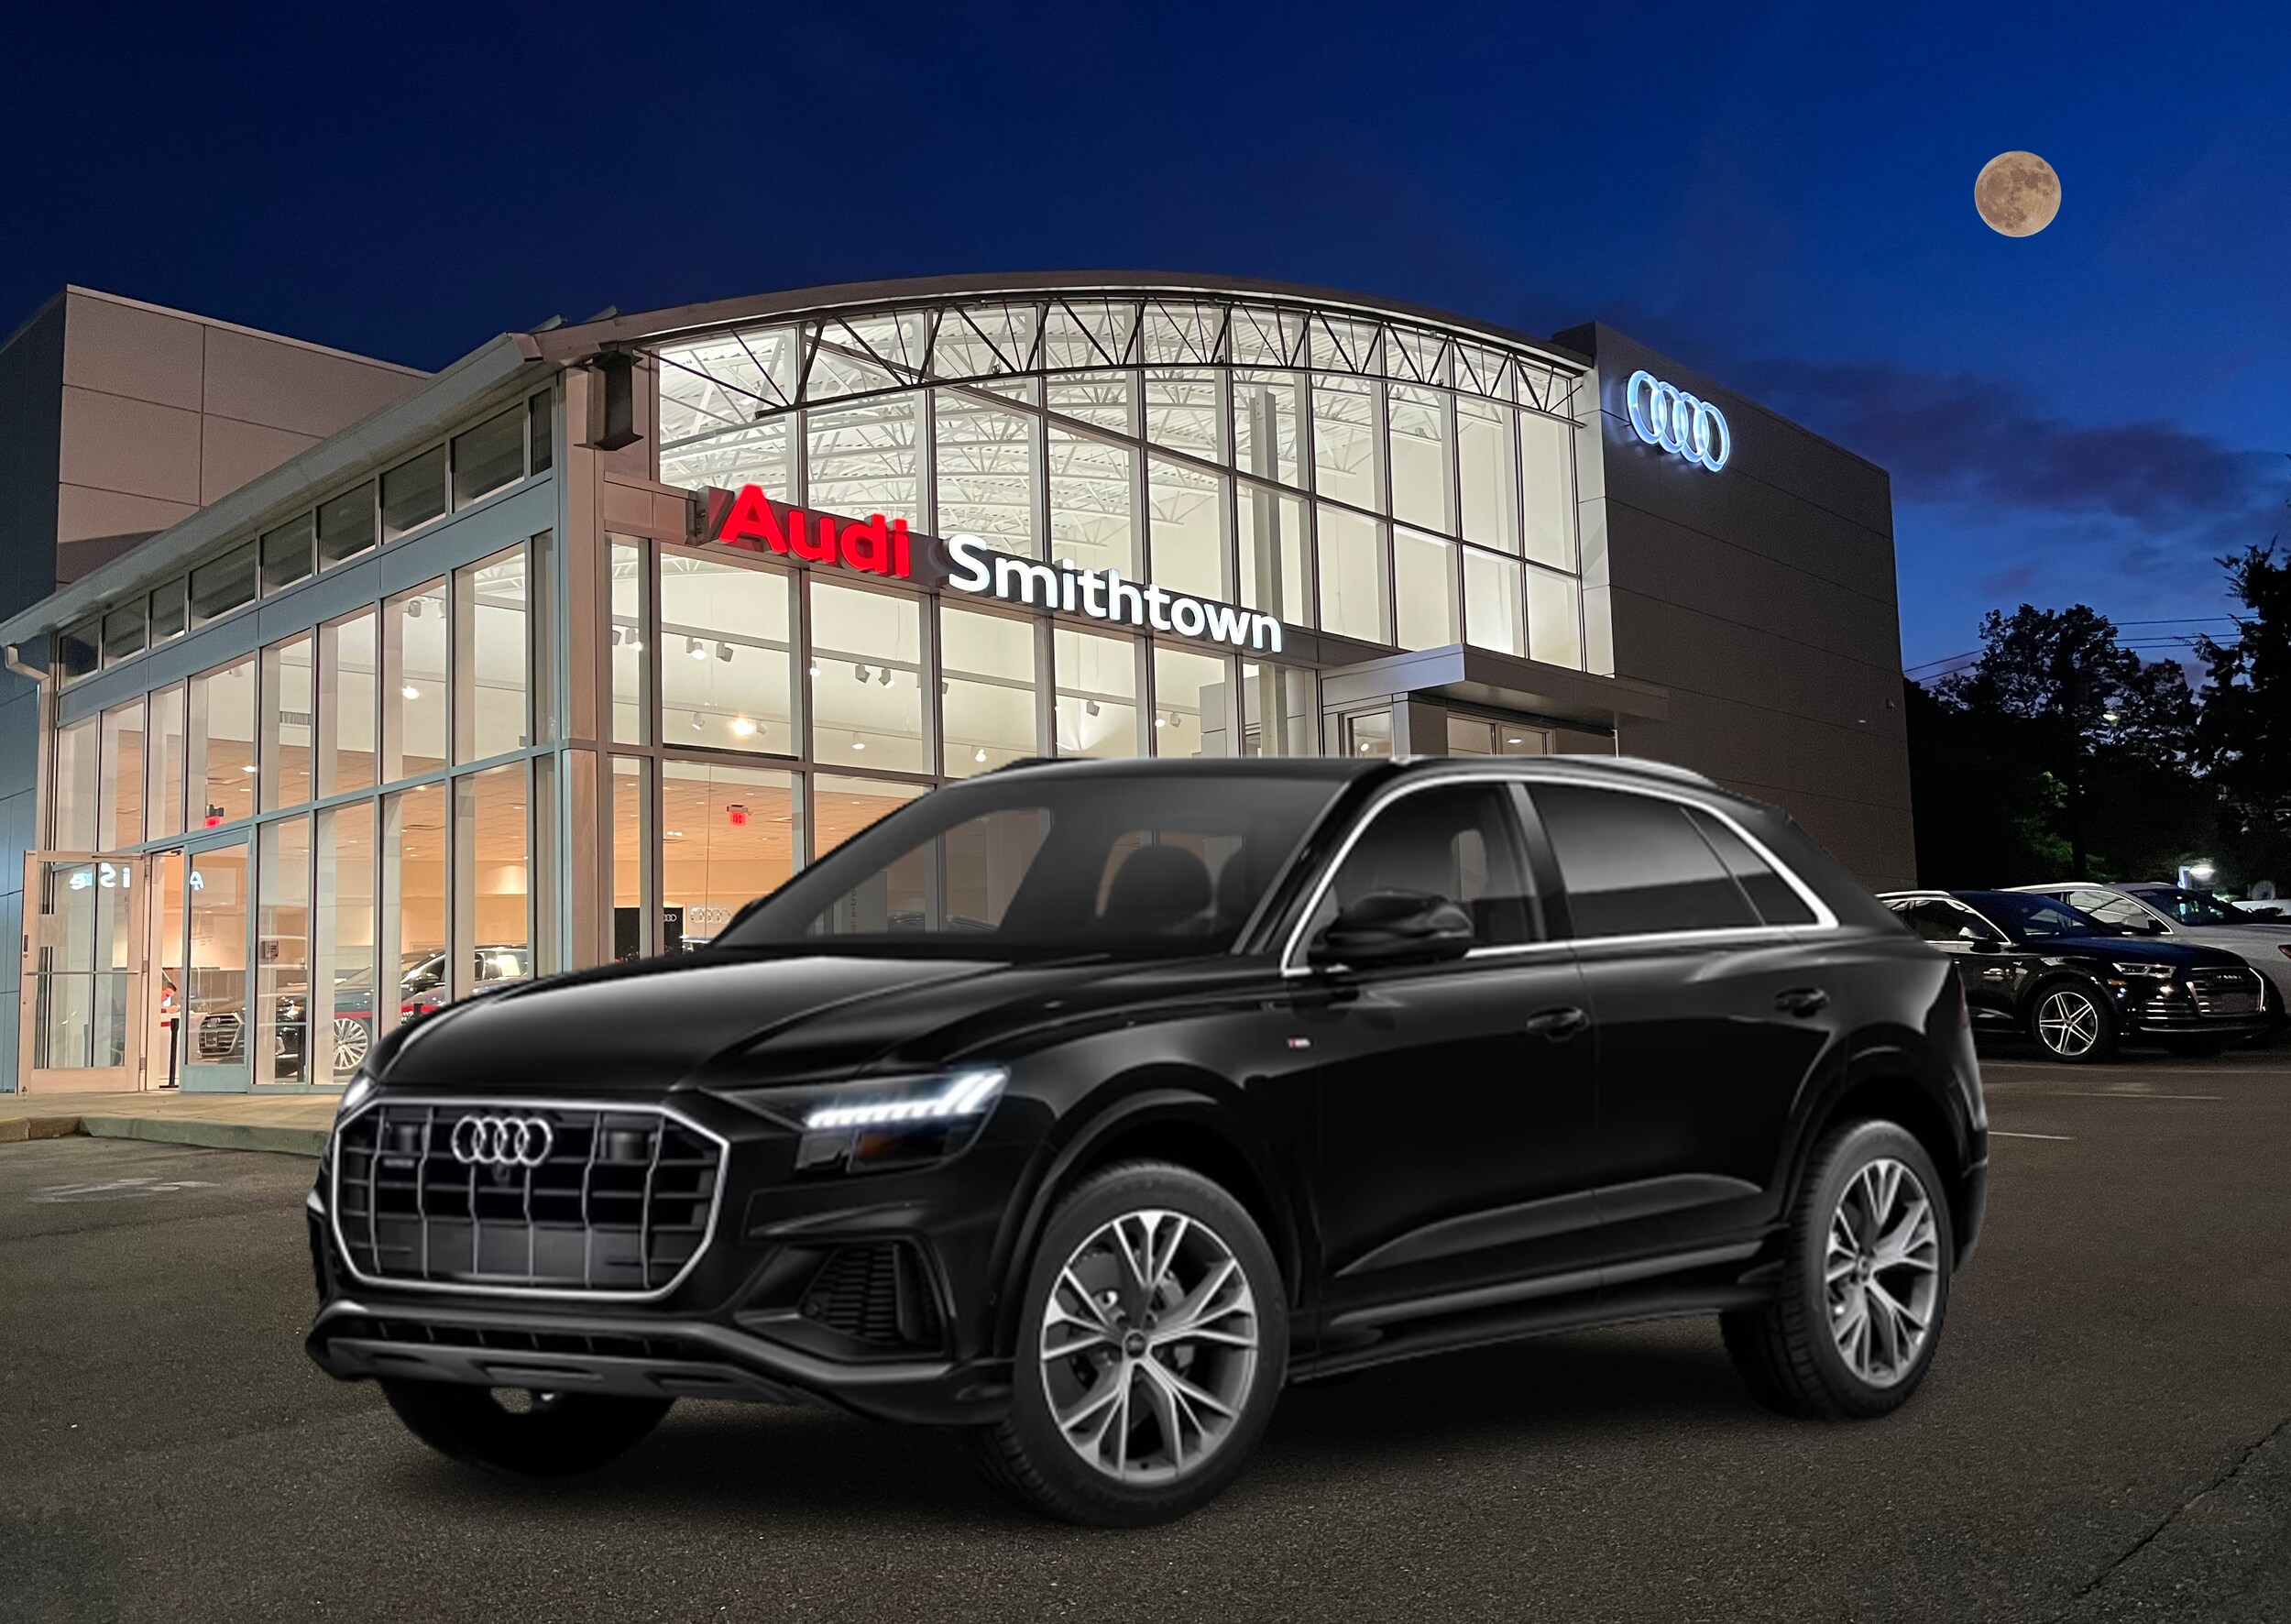 The 2019 Audi Q8  Audi of Smithtown